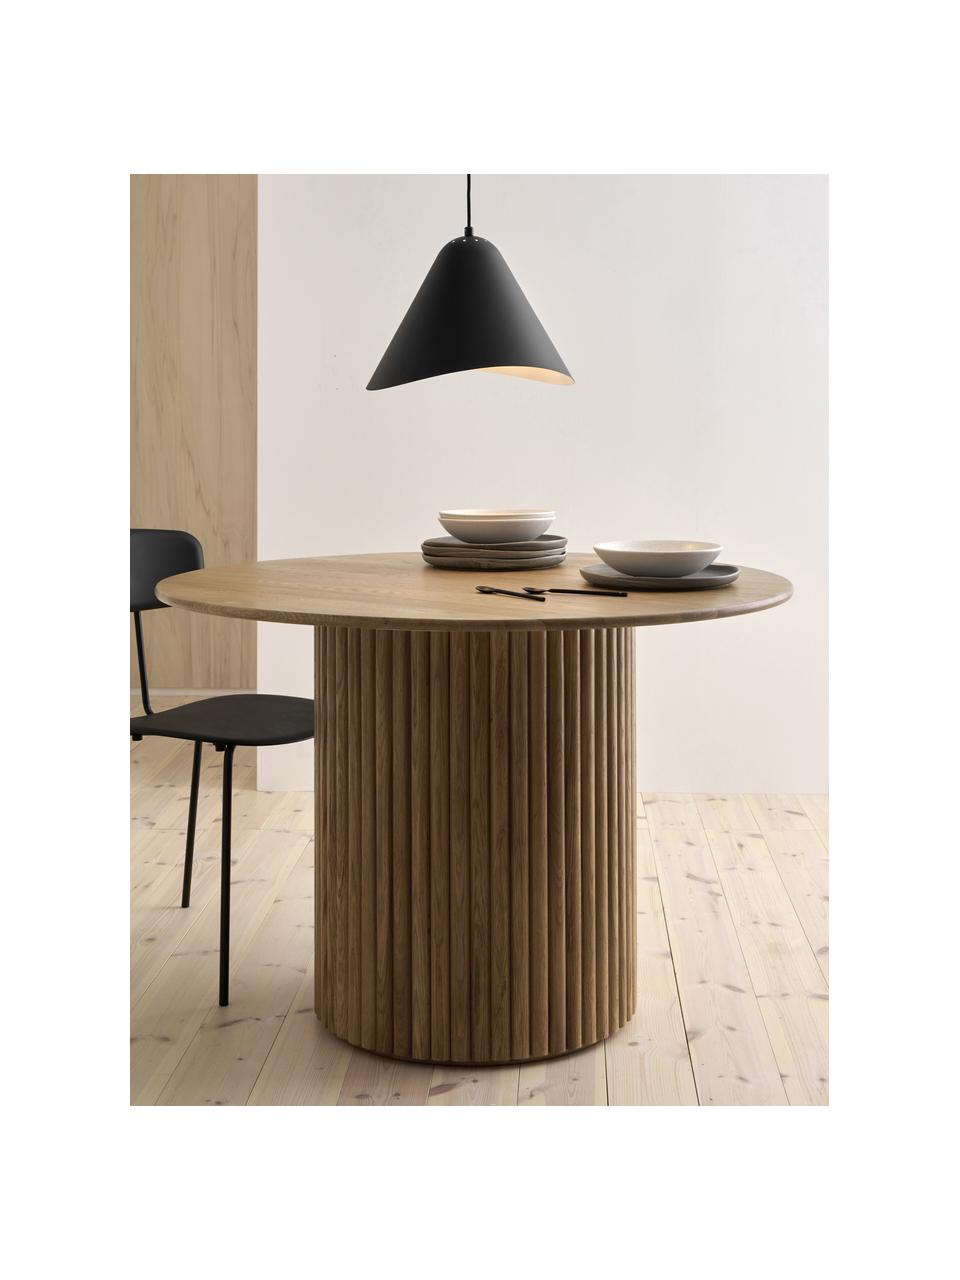 Okrągły stół do jadalni z drewna Janina, Lite drewno dębowe, płyta pilśniowa średniej gęstości (MDF) lakierowana, Brązowy, Ø 110 x W 75 cm